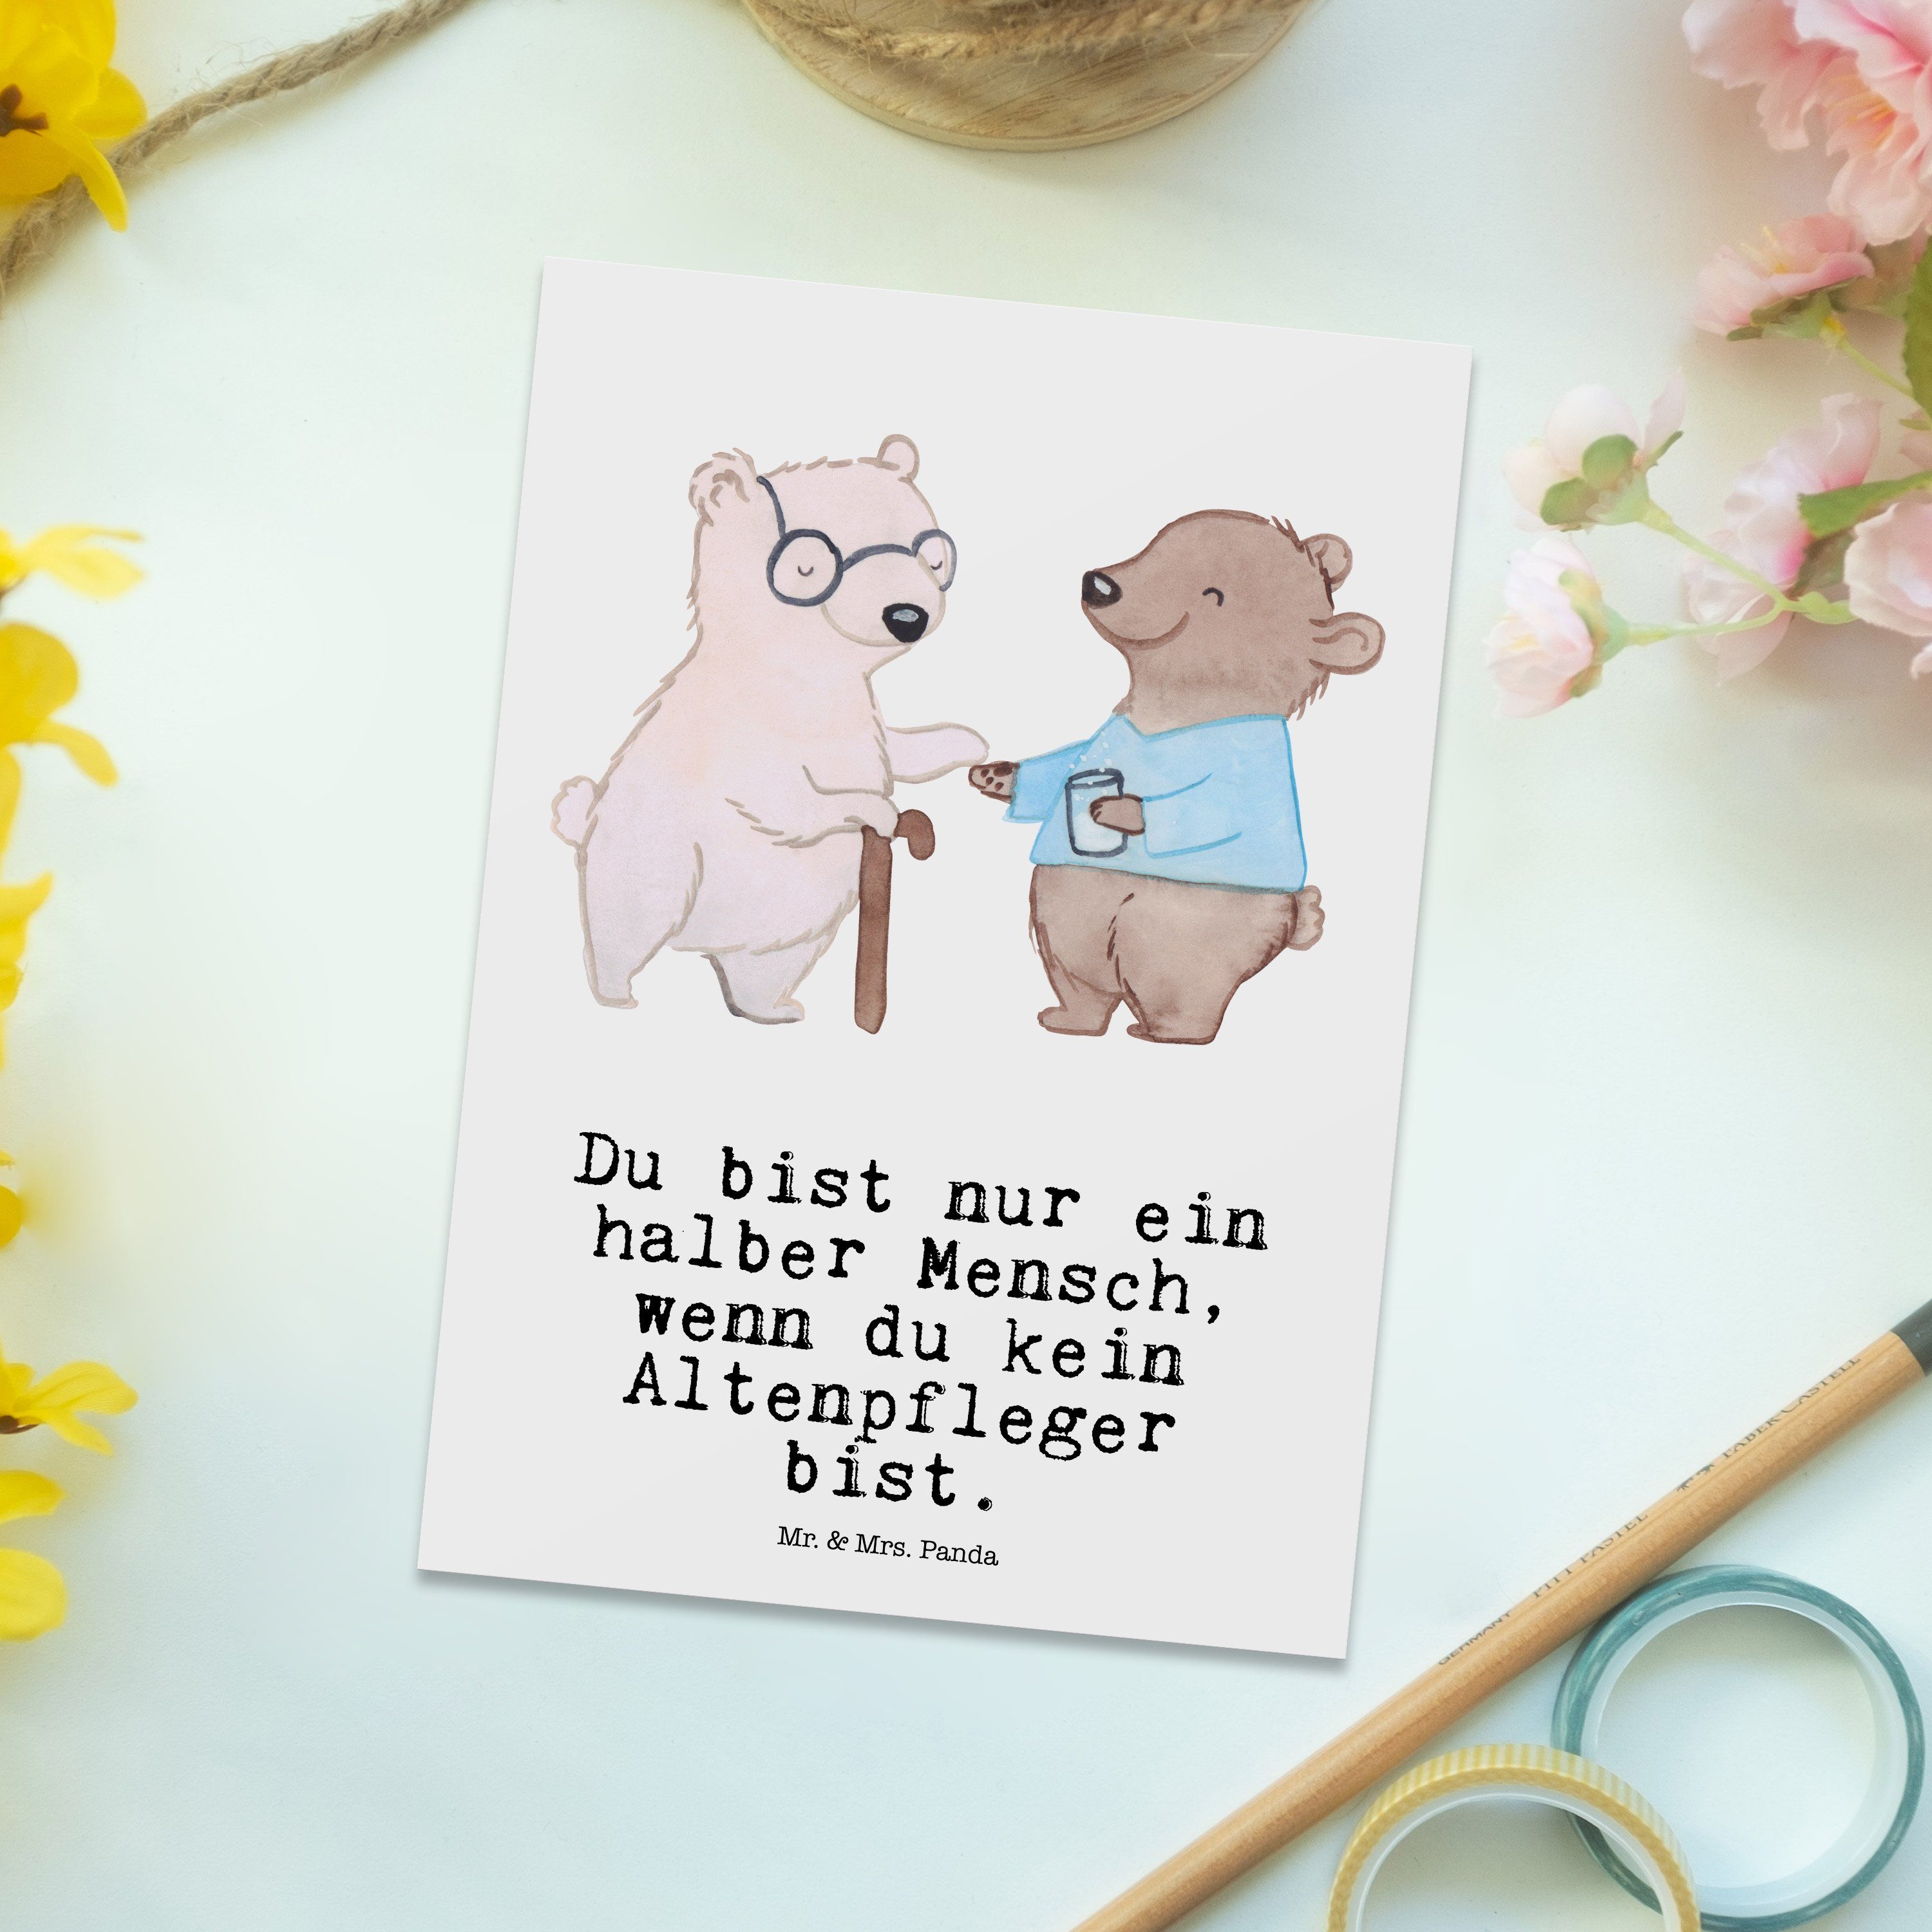 Mr. & Mrs. Panda Weiß Altenheim Er Altenpfleger Geschenk, - Postkarte - Herz Arbeitskollege, mit